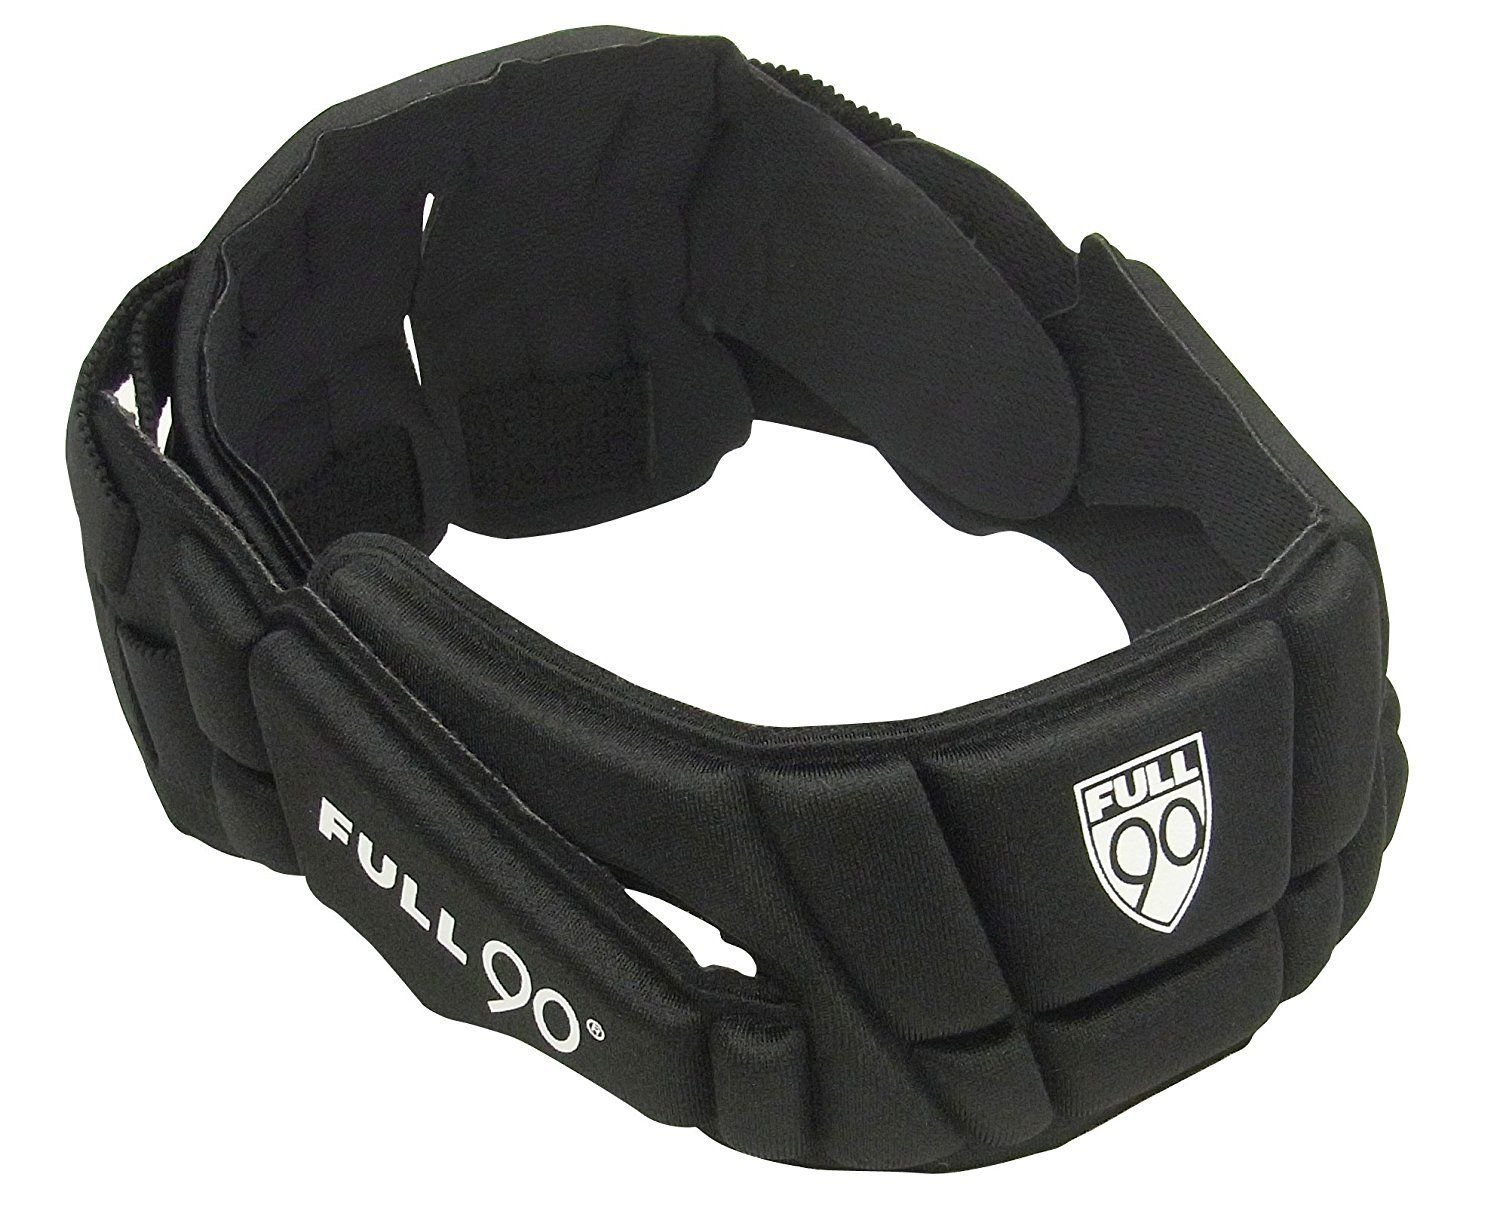 Full 90 Sports Premier Performance Soccer Headgear Case Pack of 12 - Black,Large